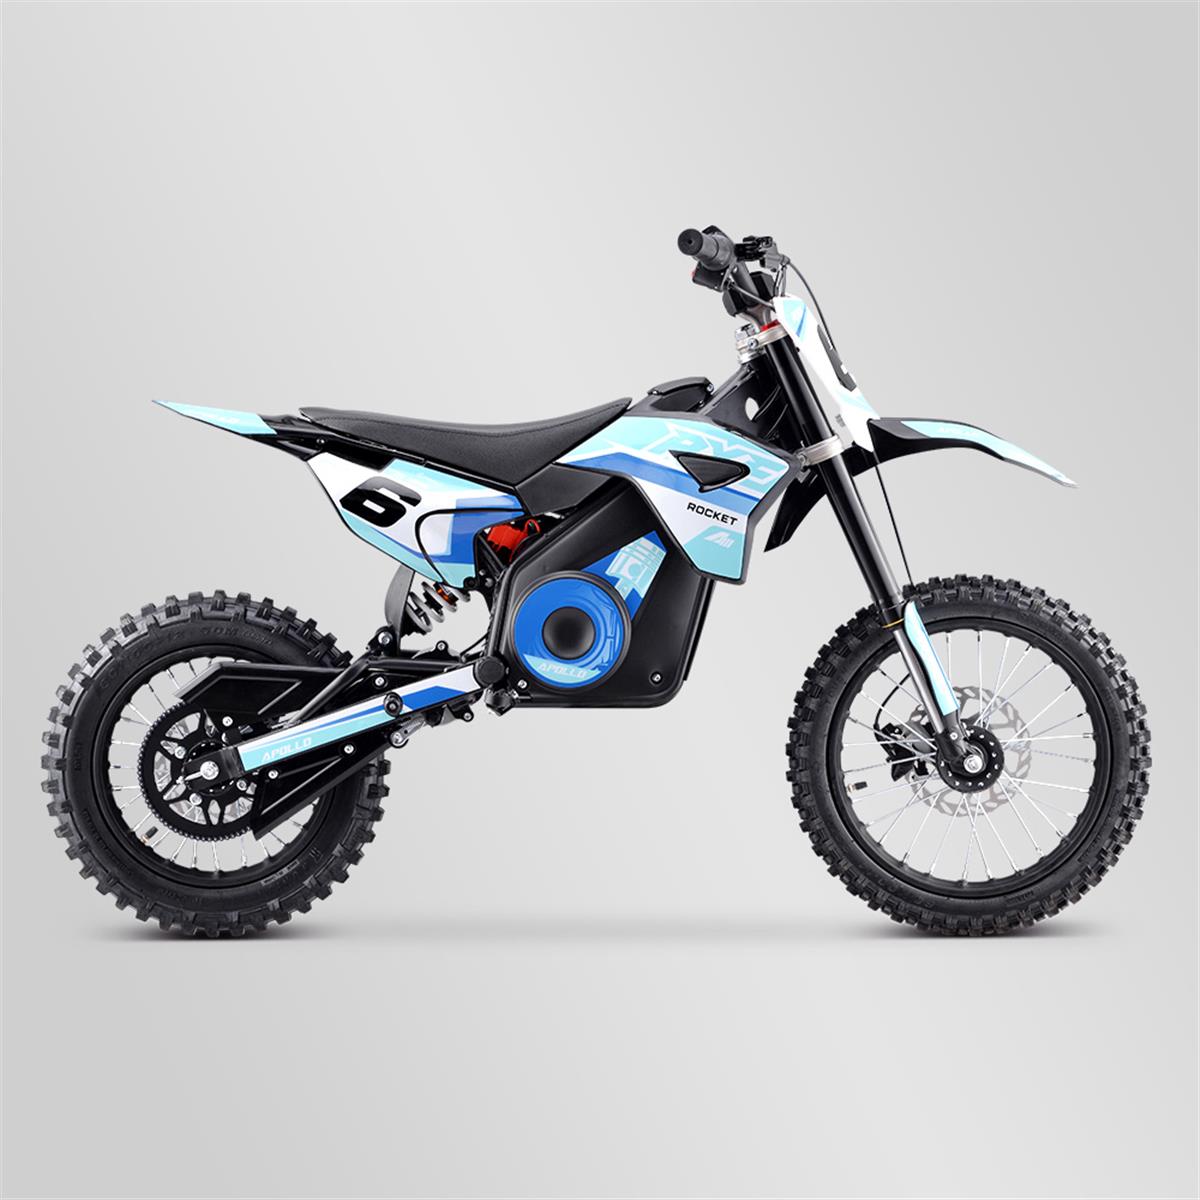 dirt-bike-enfant-apollo-rxf-rocket-1300w-2021-6-bleu